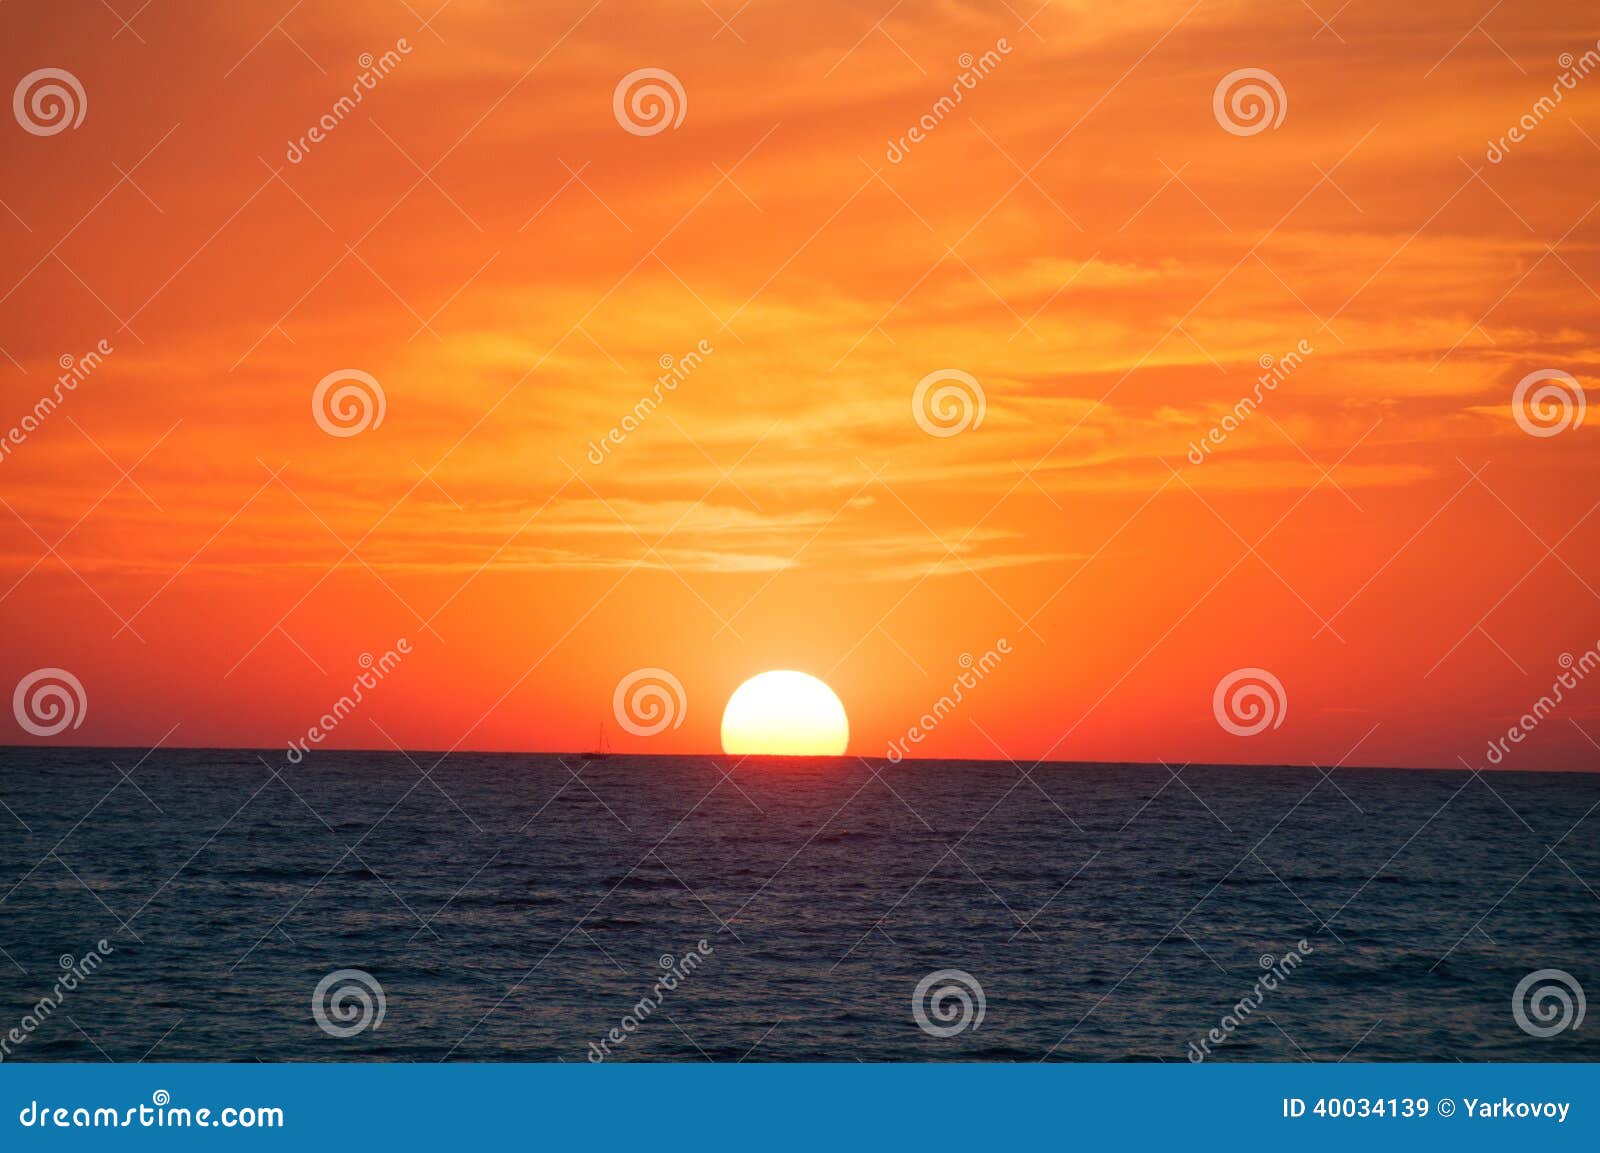 orange sunset on the sea horizon.